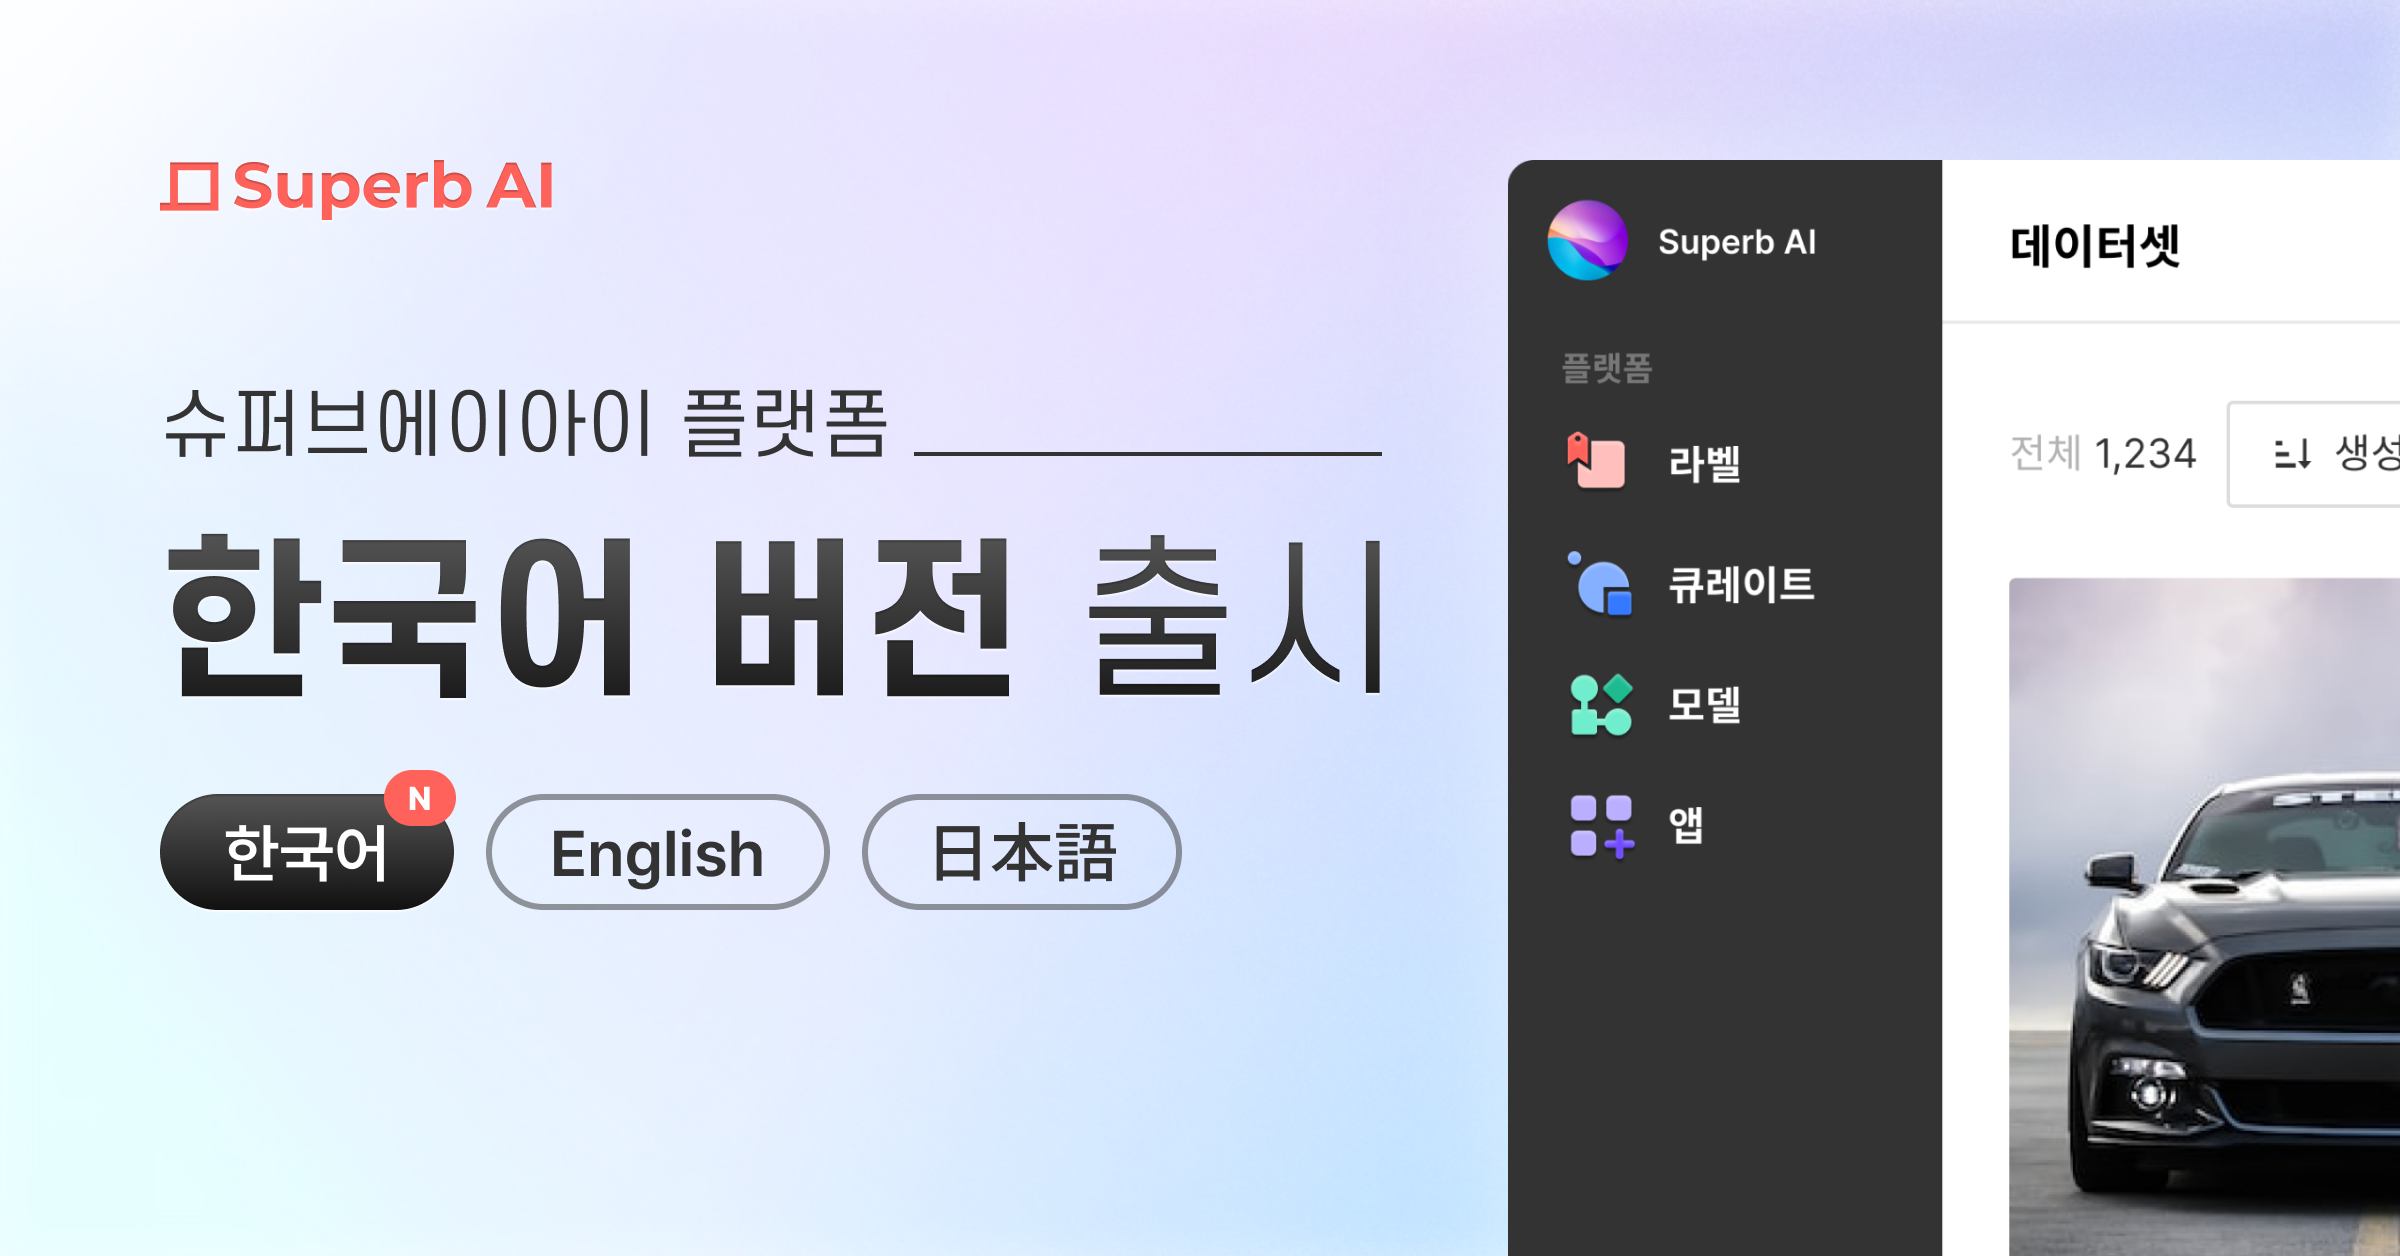 다국어 업데이트 : 한국어로 편리하게 슈퍼브 플랫폼을 이용하세요